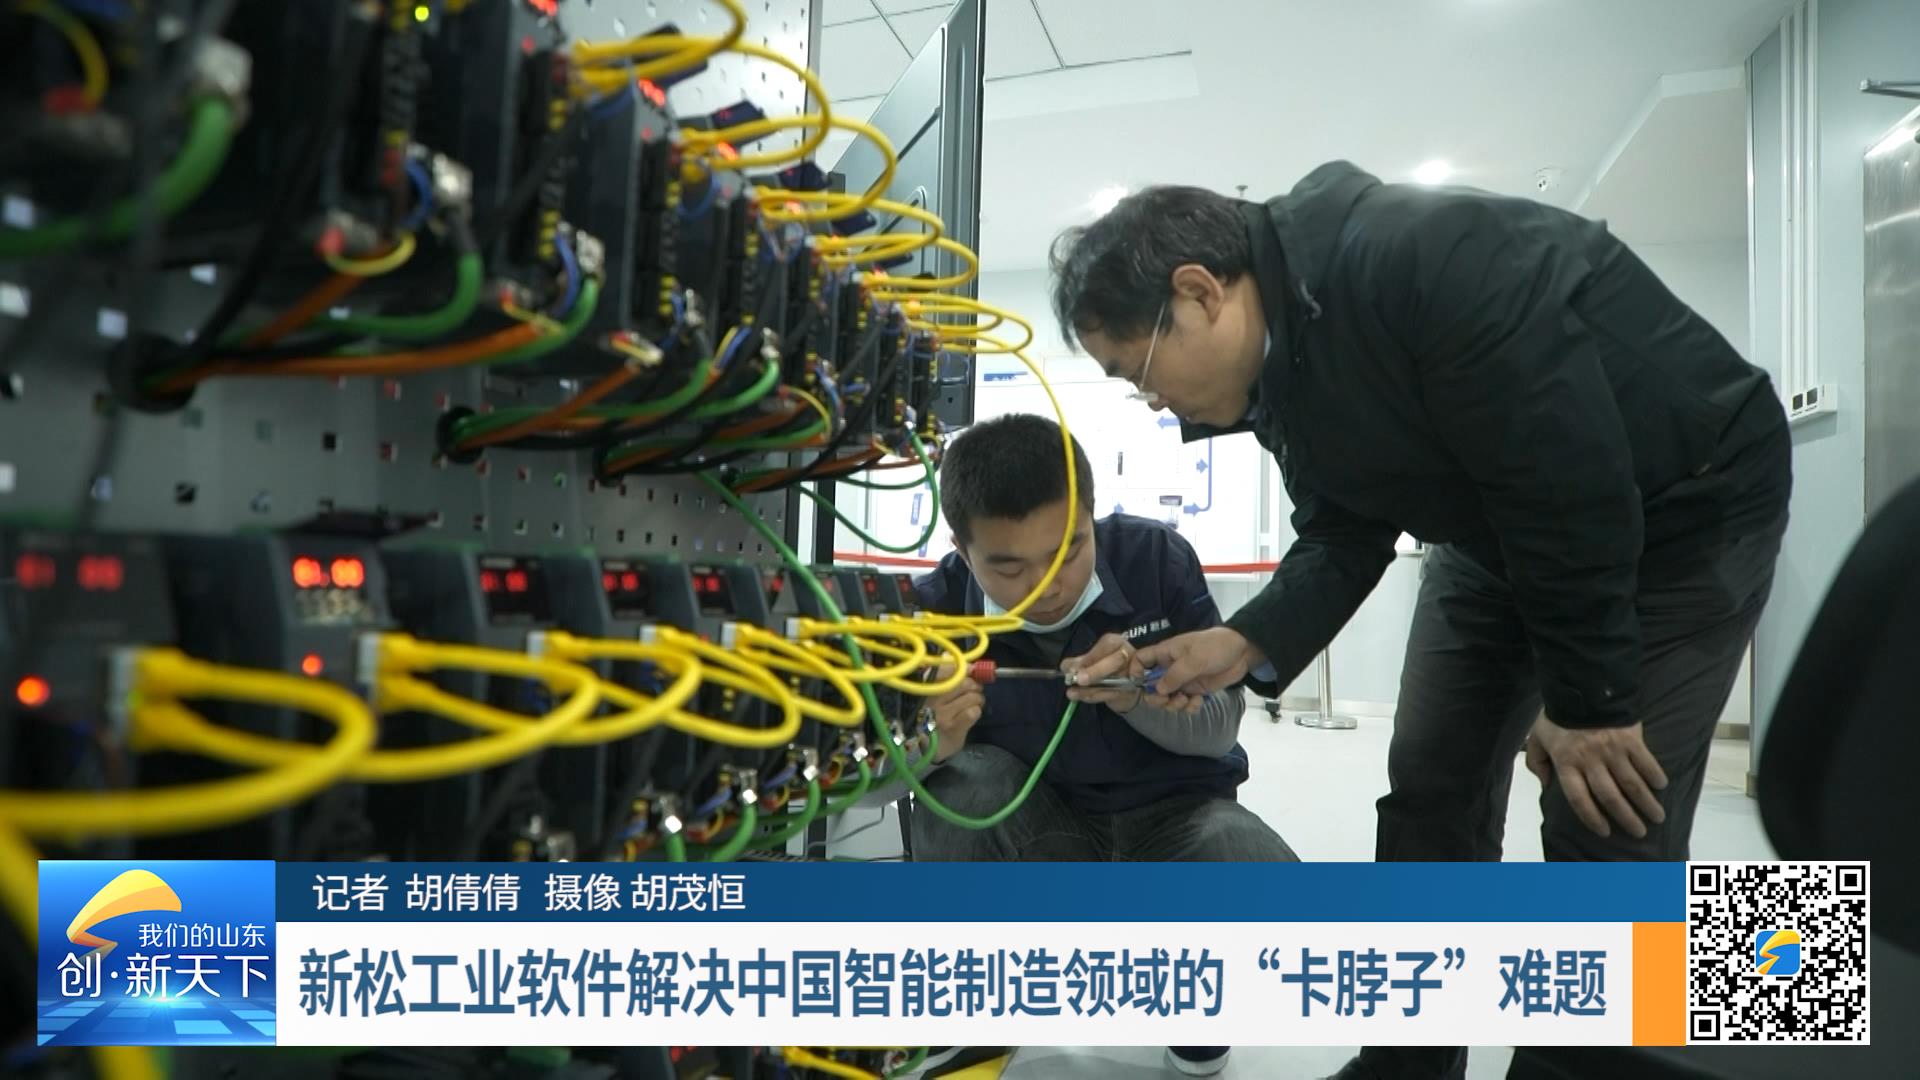 新松工业软件解决中国智能制造领域的“卡脖子”难题